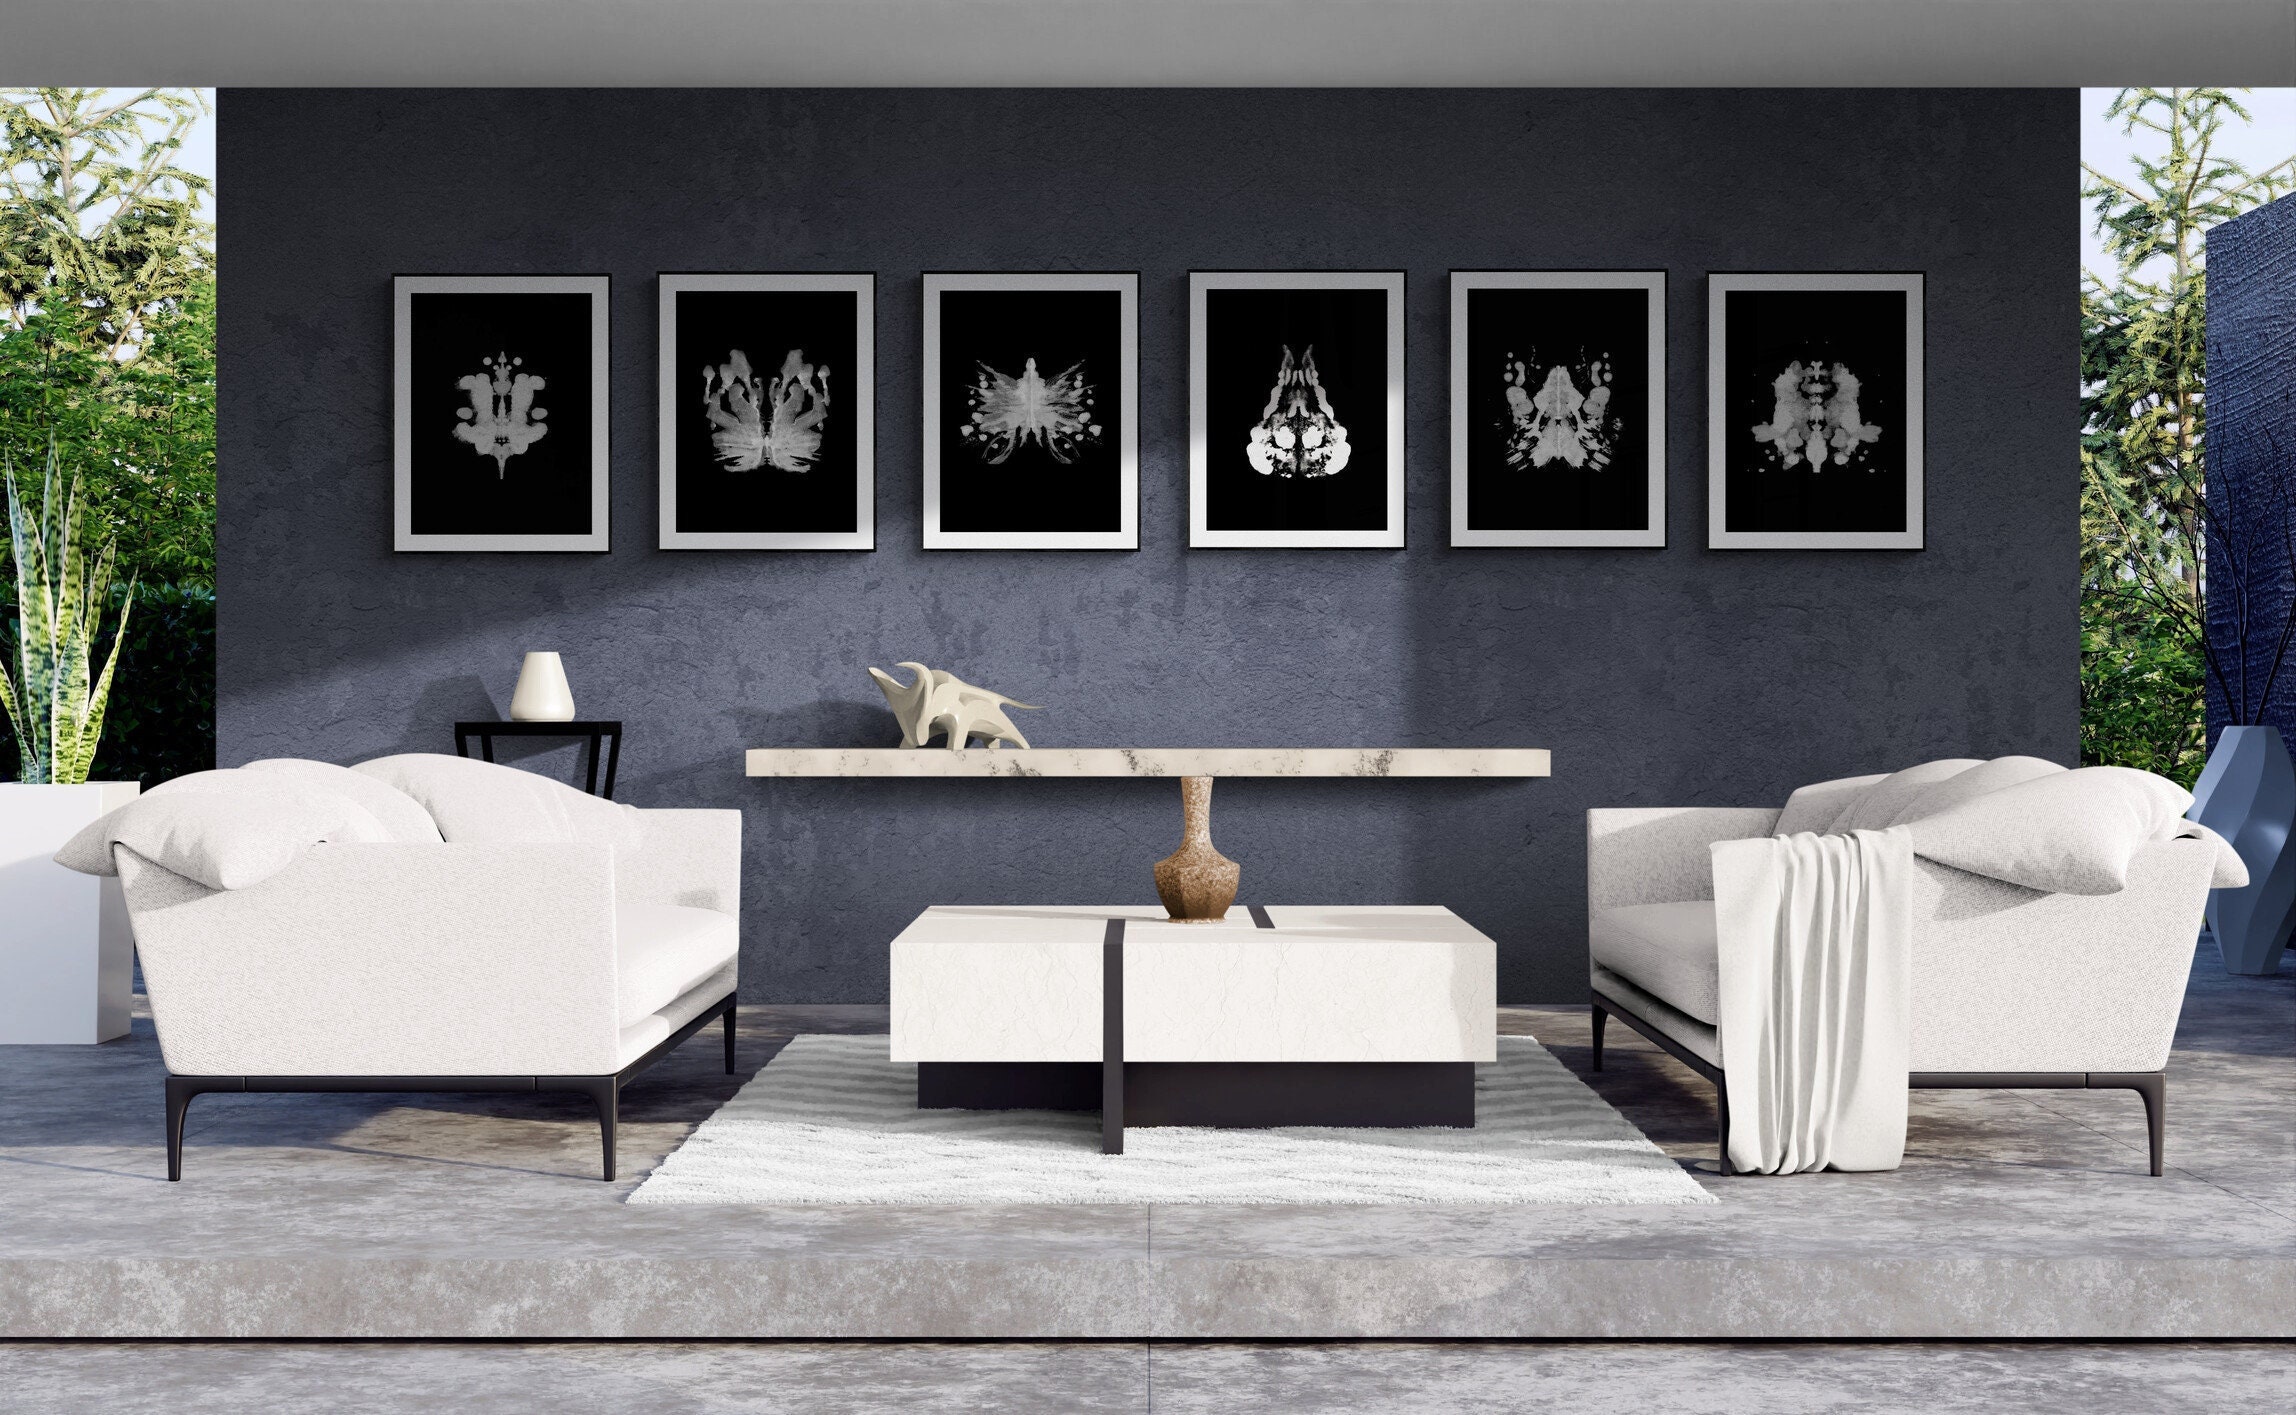 Rorschach Mariposa IV – stunning poster – Photowall